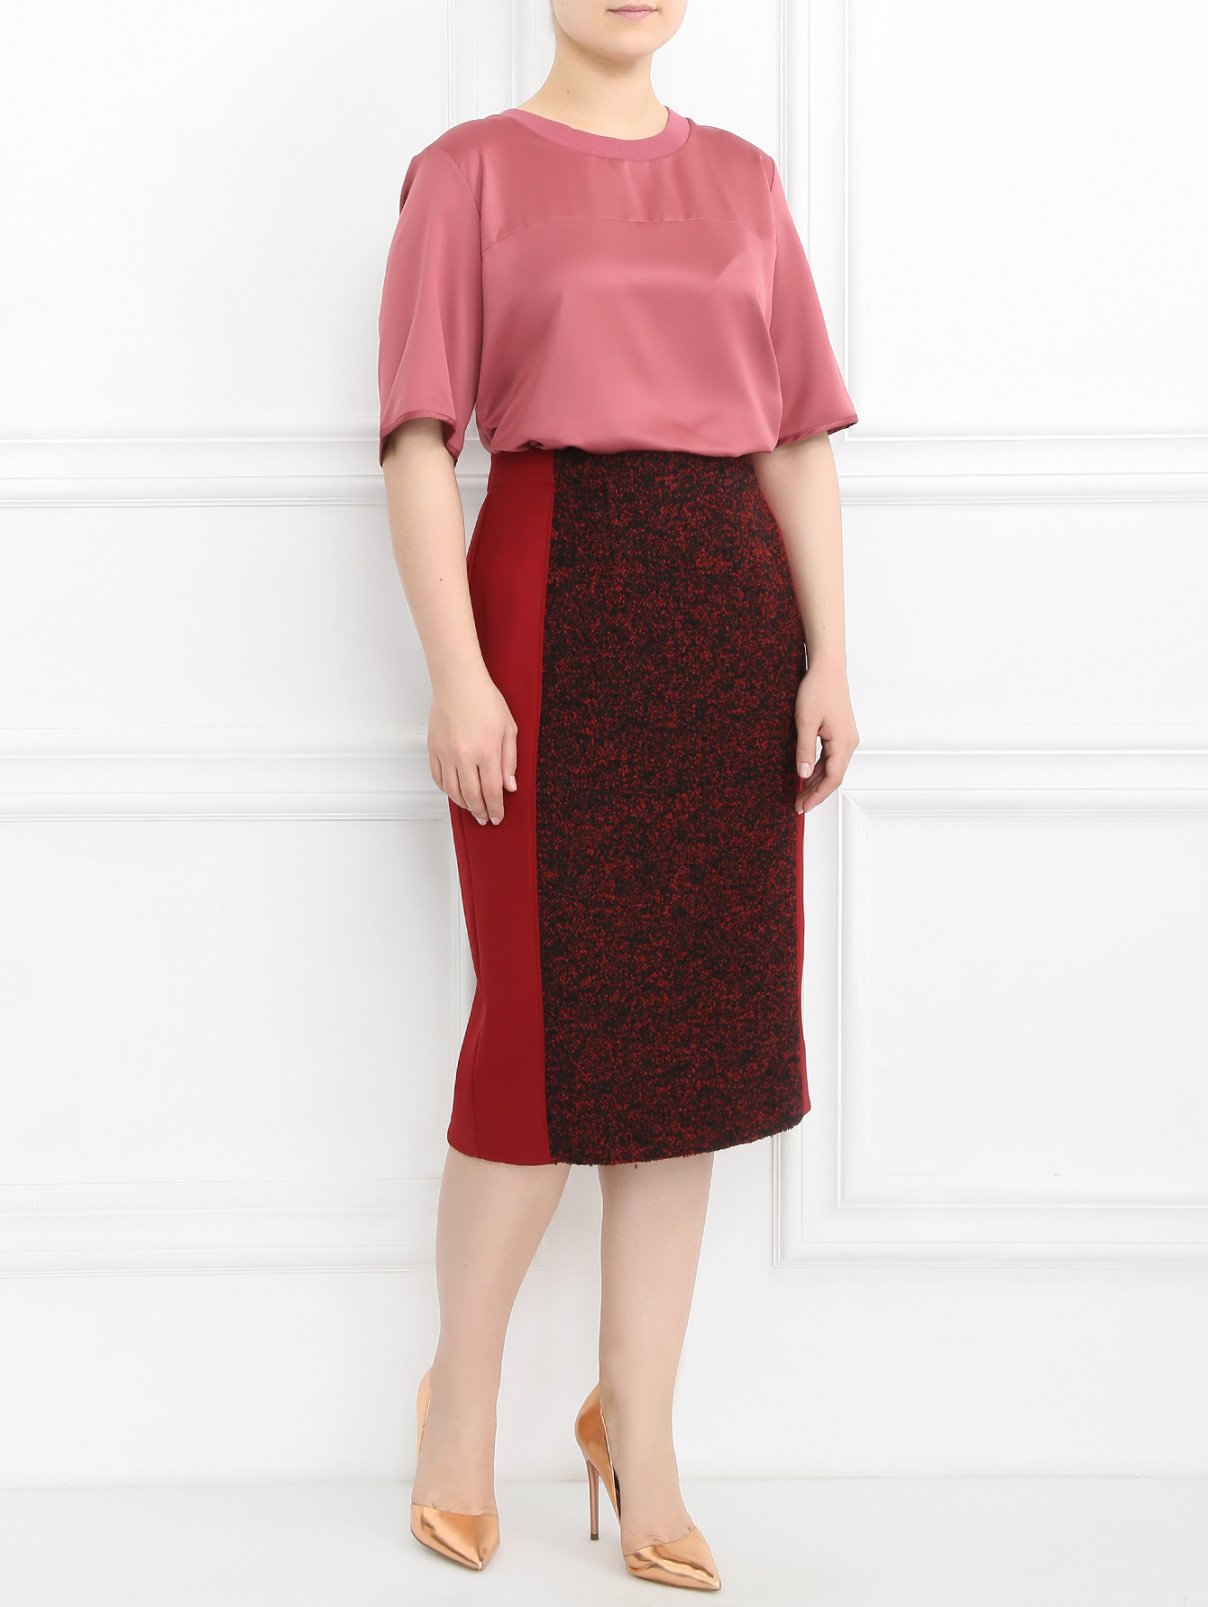 Блуза с короткими рукавами Marina Sport  –  Модель Общий вид  – Цвет:  Розовый